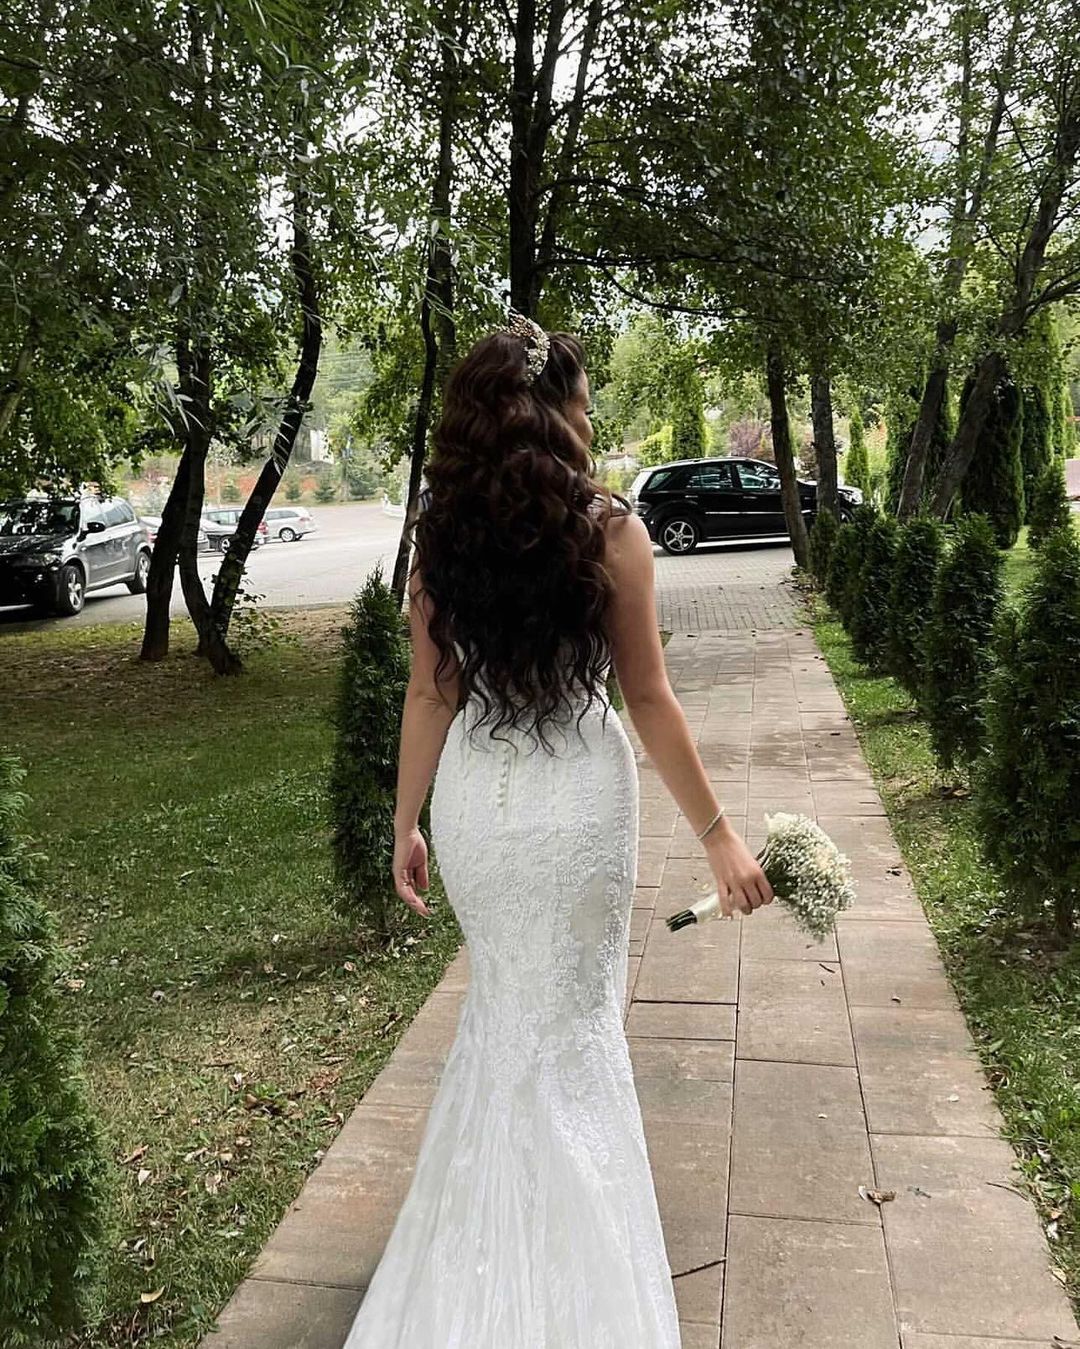 Finden Sie Schöne Brautkleider Meerjungfrau online bei babyonlinedress.de. Hochzeitskleider Spitze Günstig für Sie zur Hochzeit gehen.